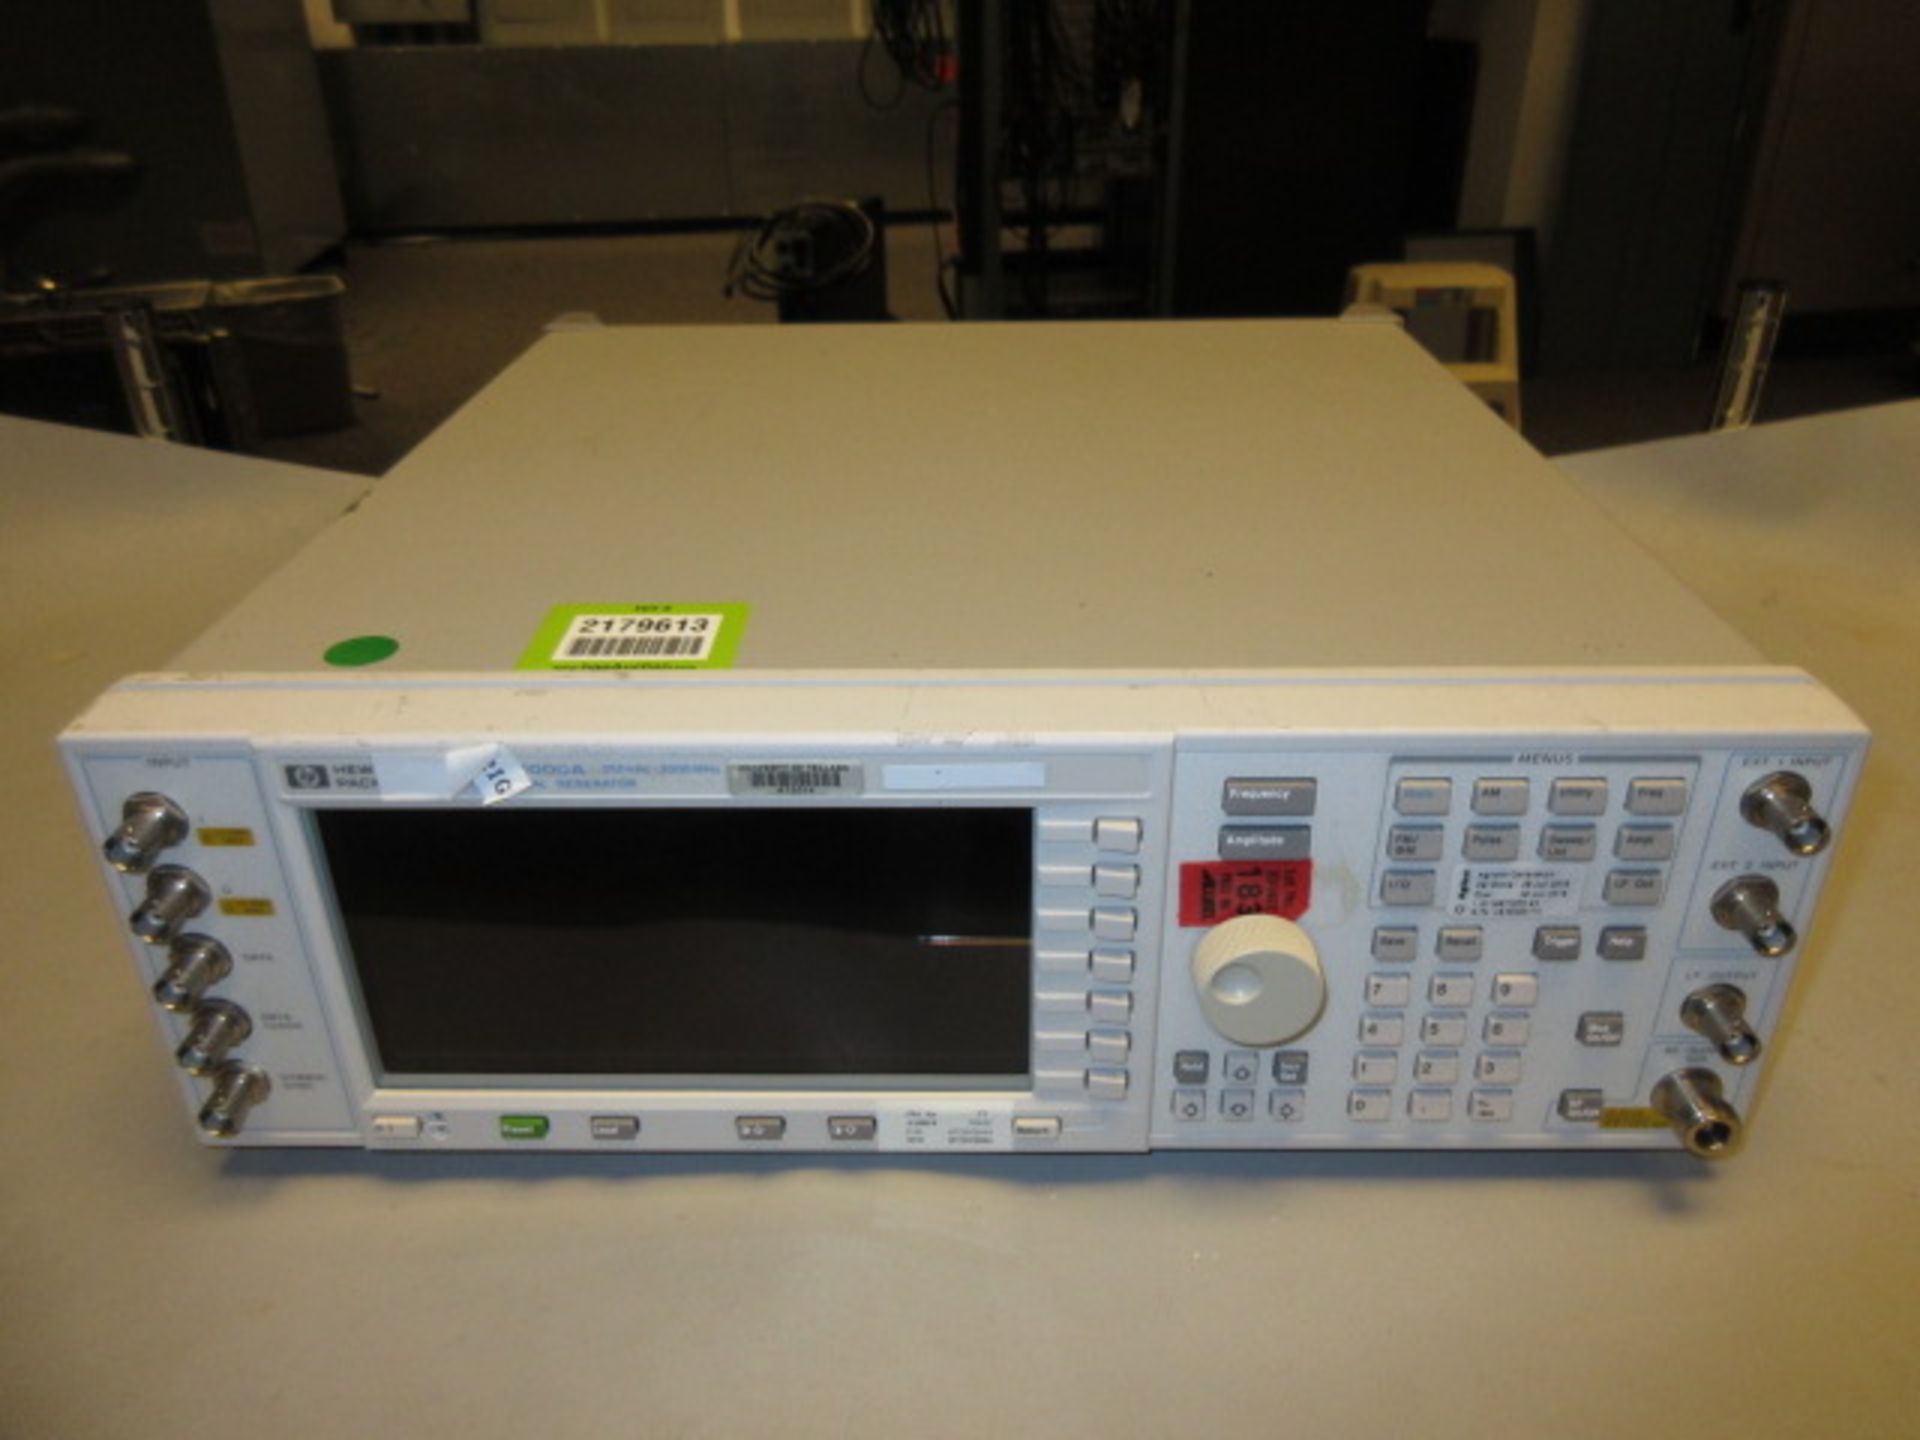 Hewlett Packard ESG-D3000A Digital Signal Generator. Digital Signal Generator, 250 kHz - 3000 MHz,